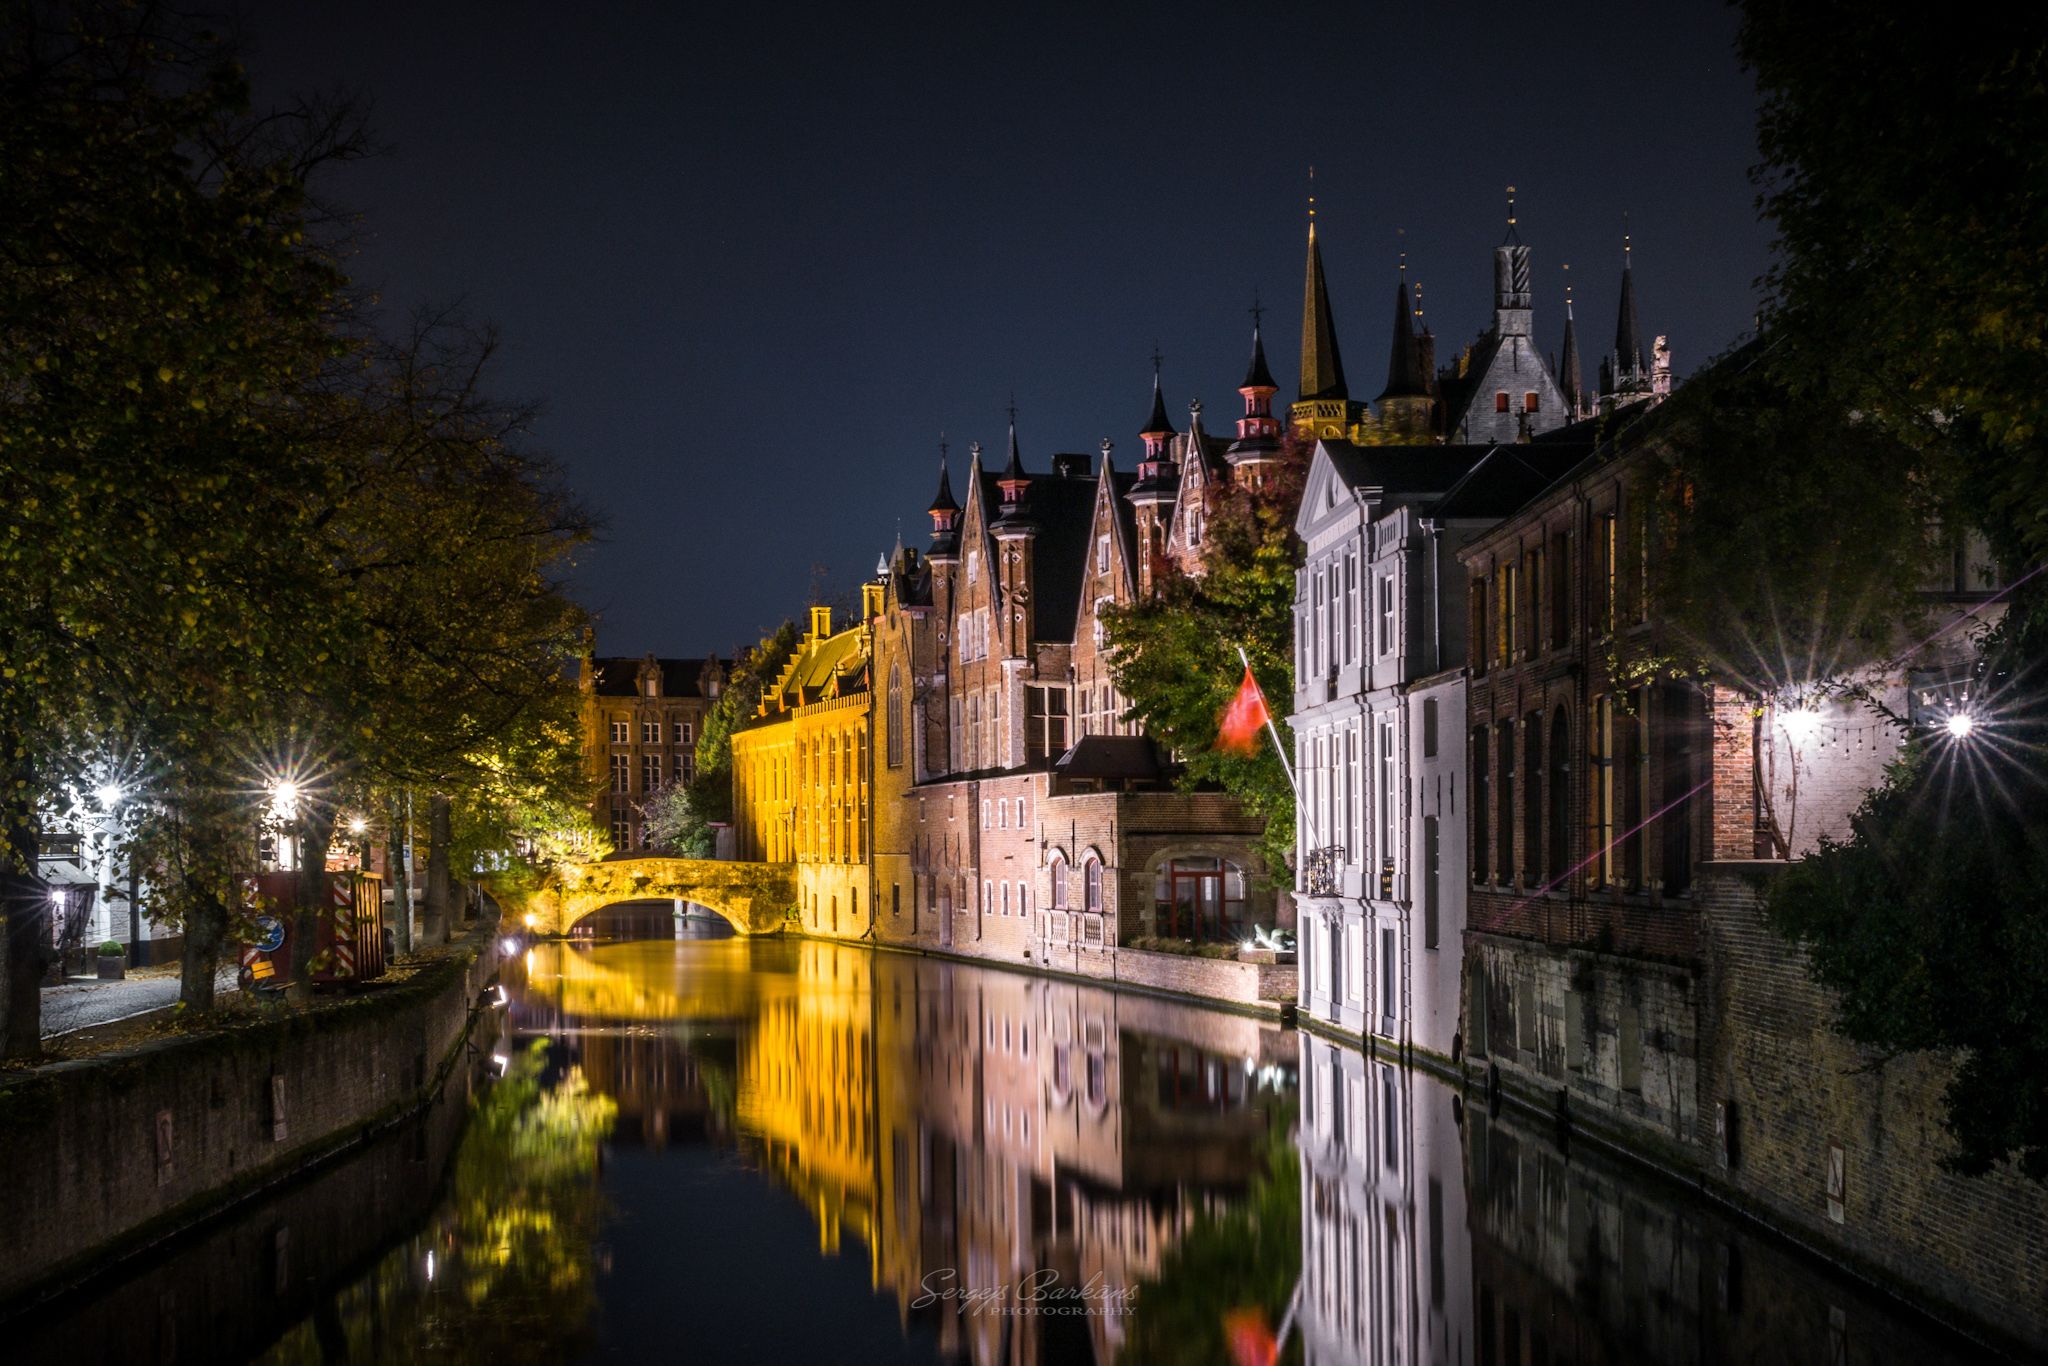 #bruges #brugge #belgium #night #city #town #reflection, Sergejs Barkans